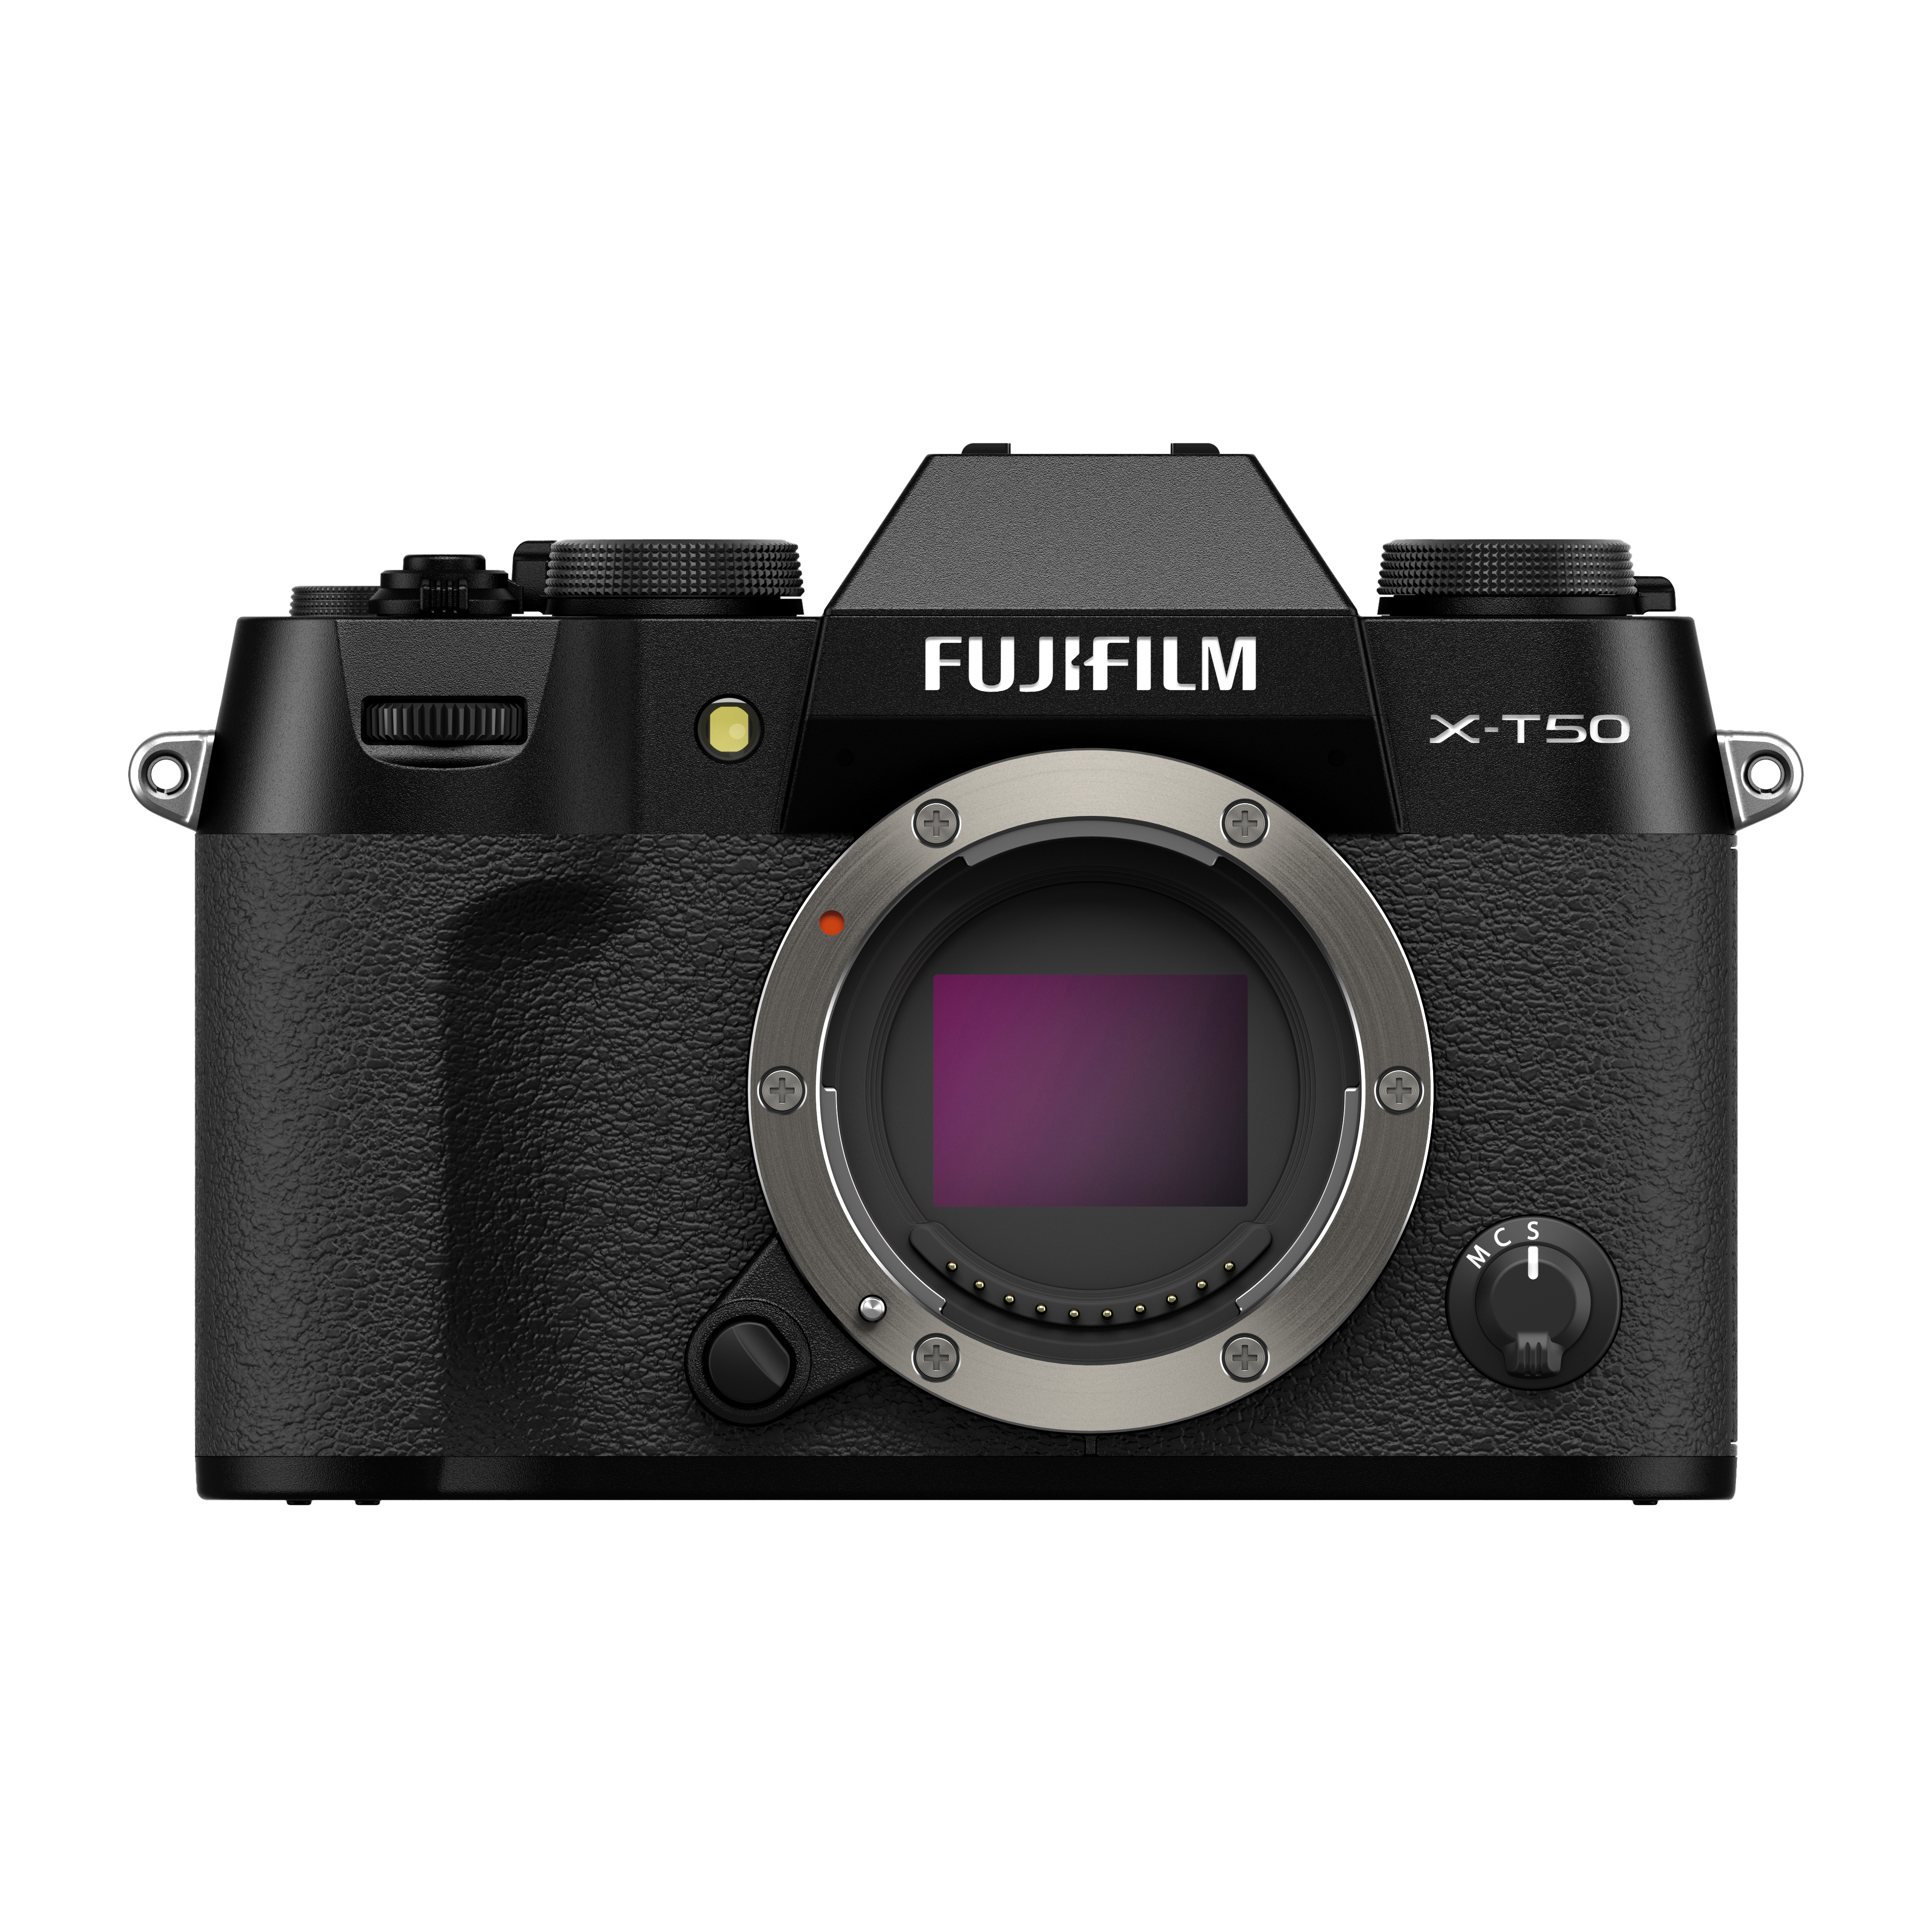 FUJIFILM X-T50 สี Black เป็นกล้องดิจิตอล ดีไซน์ขนาดกะทัดรัดและน้ำหนักเบา ด้วยคุณสมบัติจำลองฟิล์มที่รวมอยู่ใน Film Dial ด้านบน สามารถสลับระหว่างโทนสีที่หลากหลายได้อย่างง่ายดาย ช่วยสร้างสรรค์ภาพถ่ายที่โดดเด่นด้วยอรรถรสแบบมืออาชีพอีกด้วย